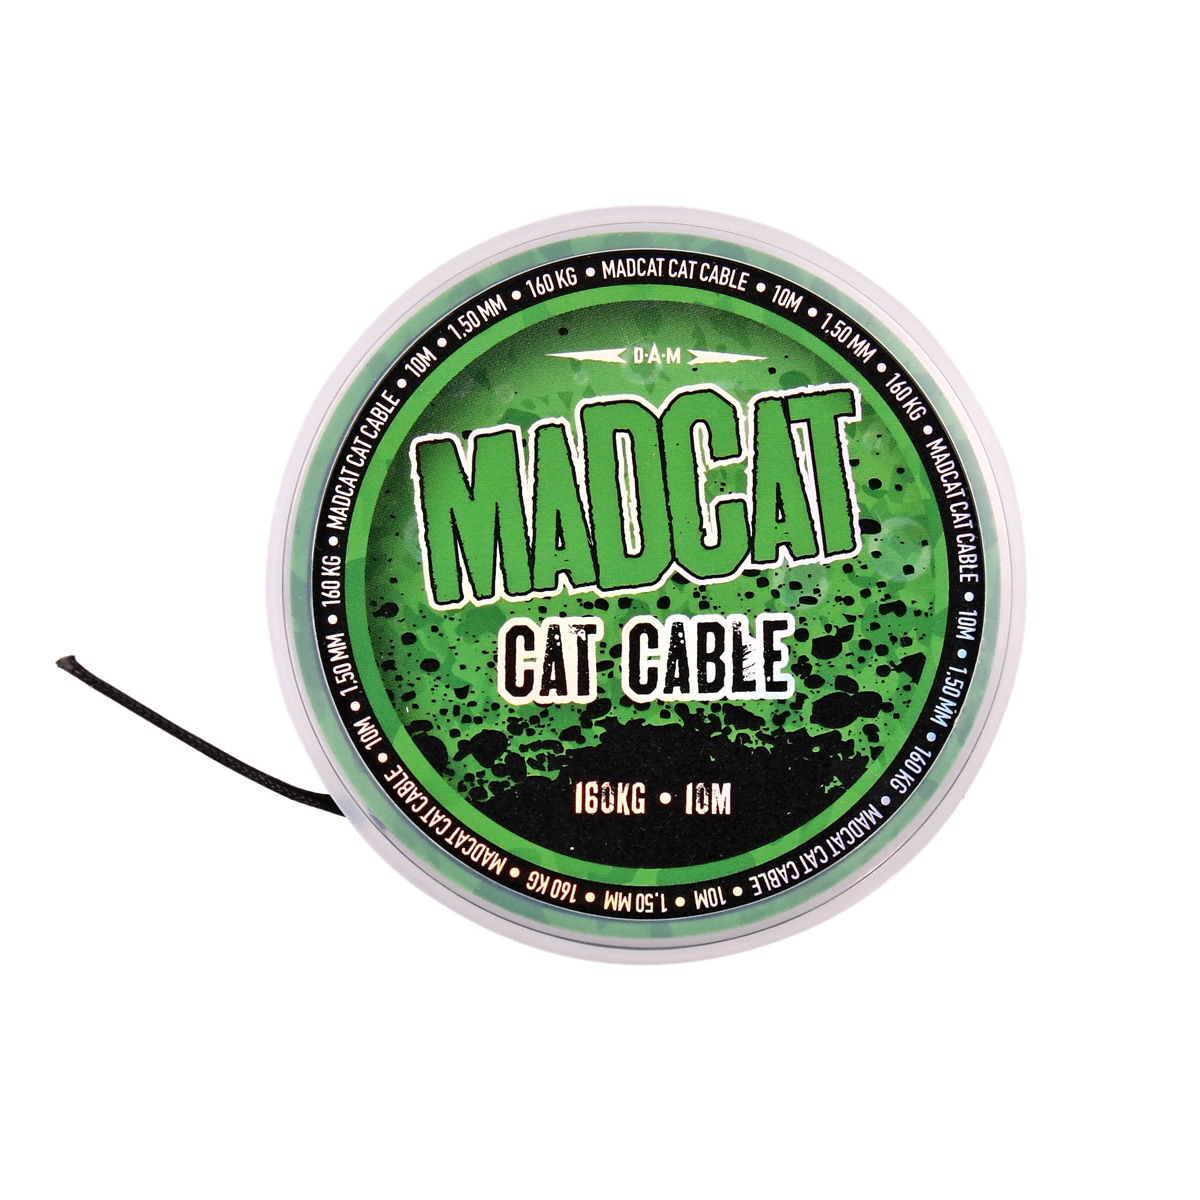 MADCAT CAT CABLE 10M 1,5MM 160KG